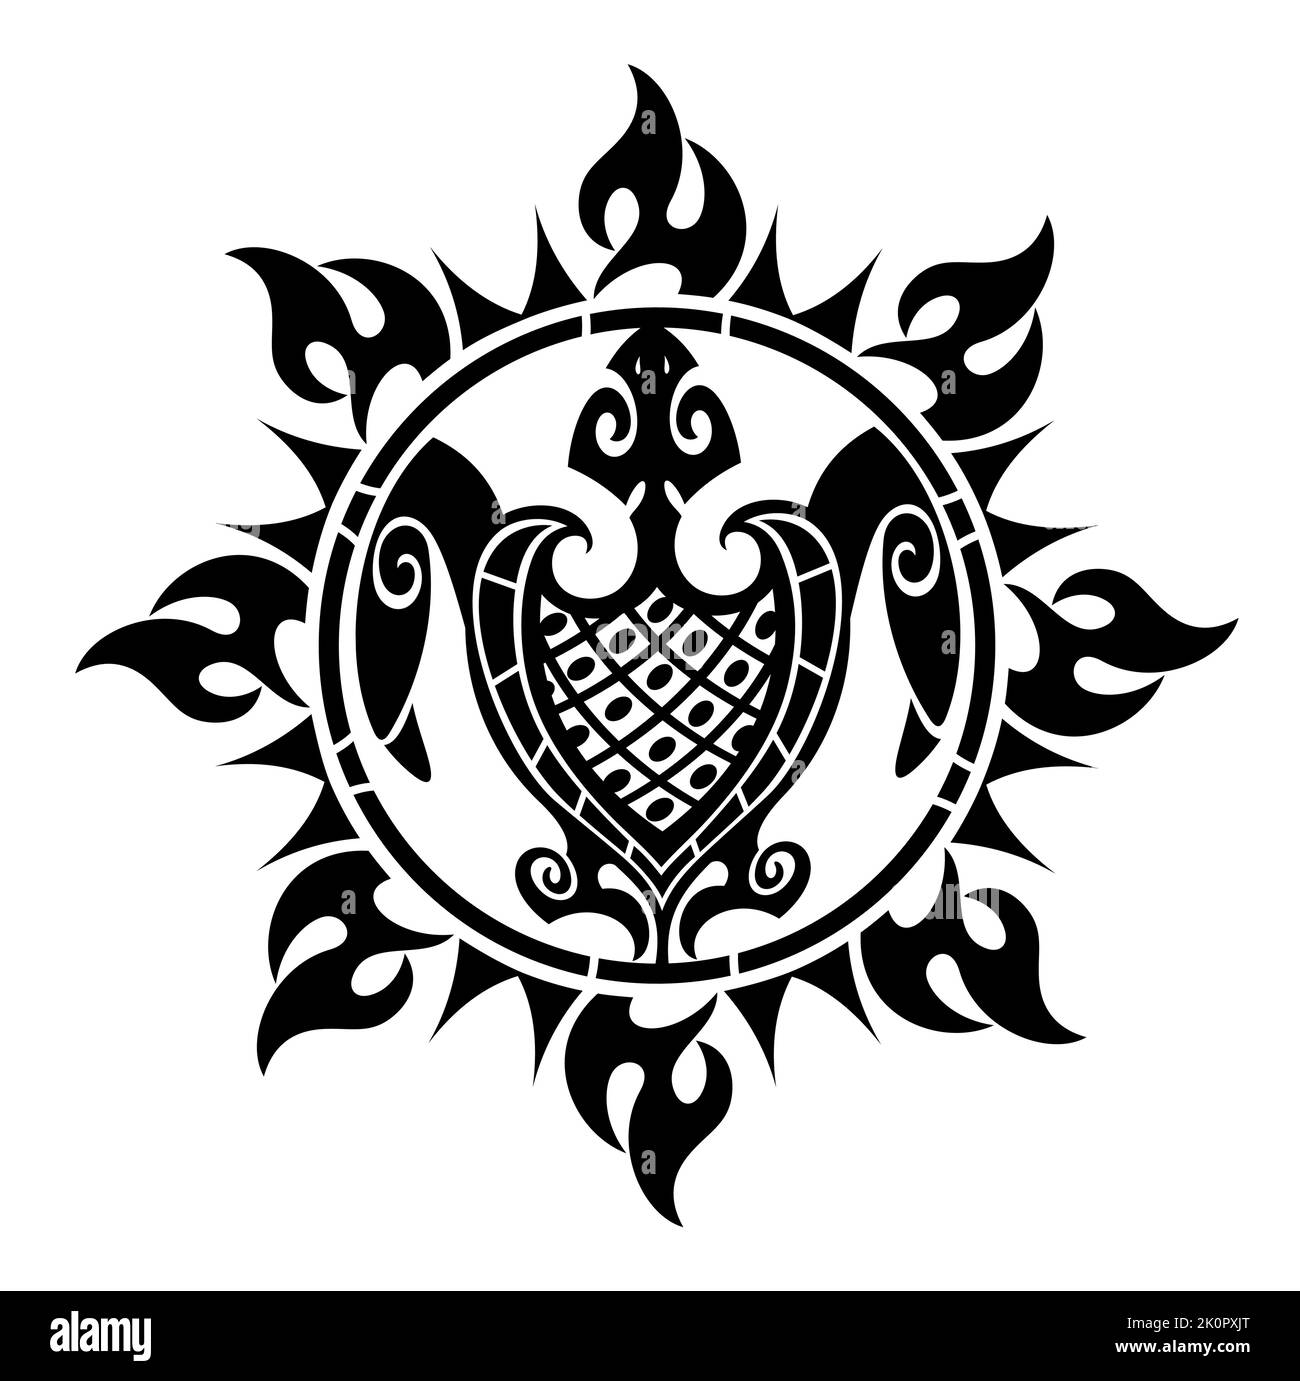 Illustrazione della tartaruga decorativa in stile Maori. Design con tartaruga da tatuaggio. Abstract de sign per tazza, maglietta, custodia per telefono. Ideale per la stampa, poster, t-s. Illustrazione Vettoriale